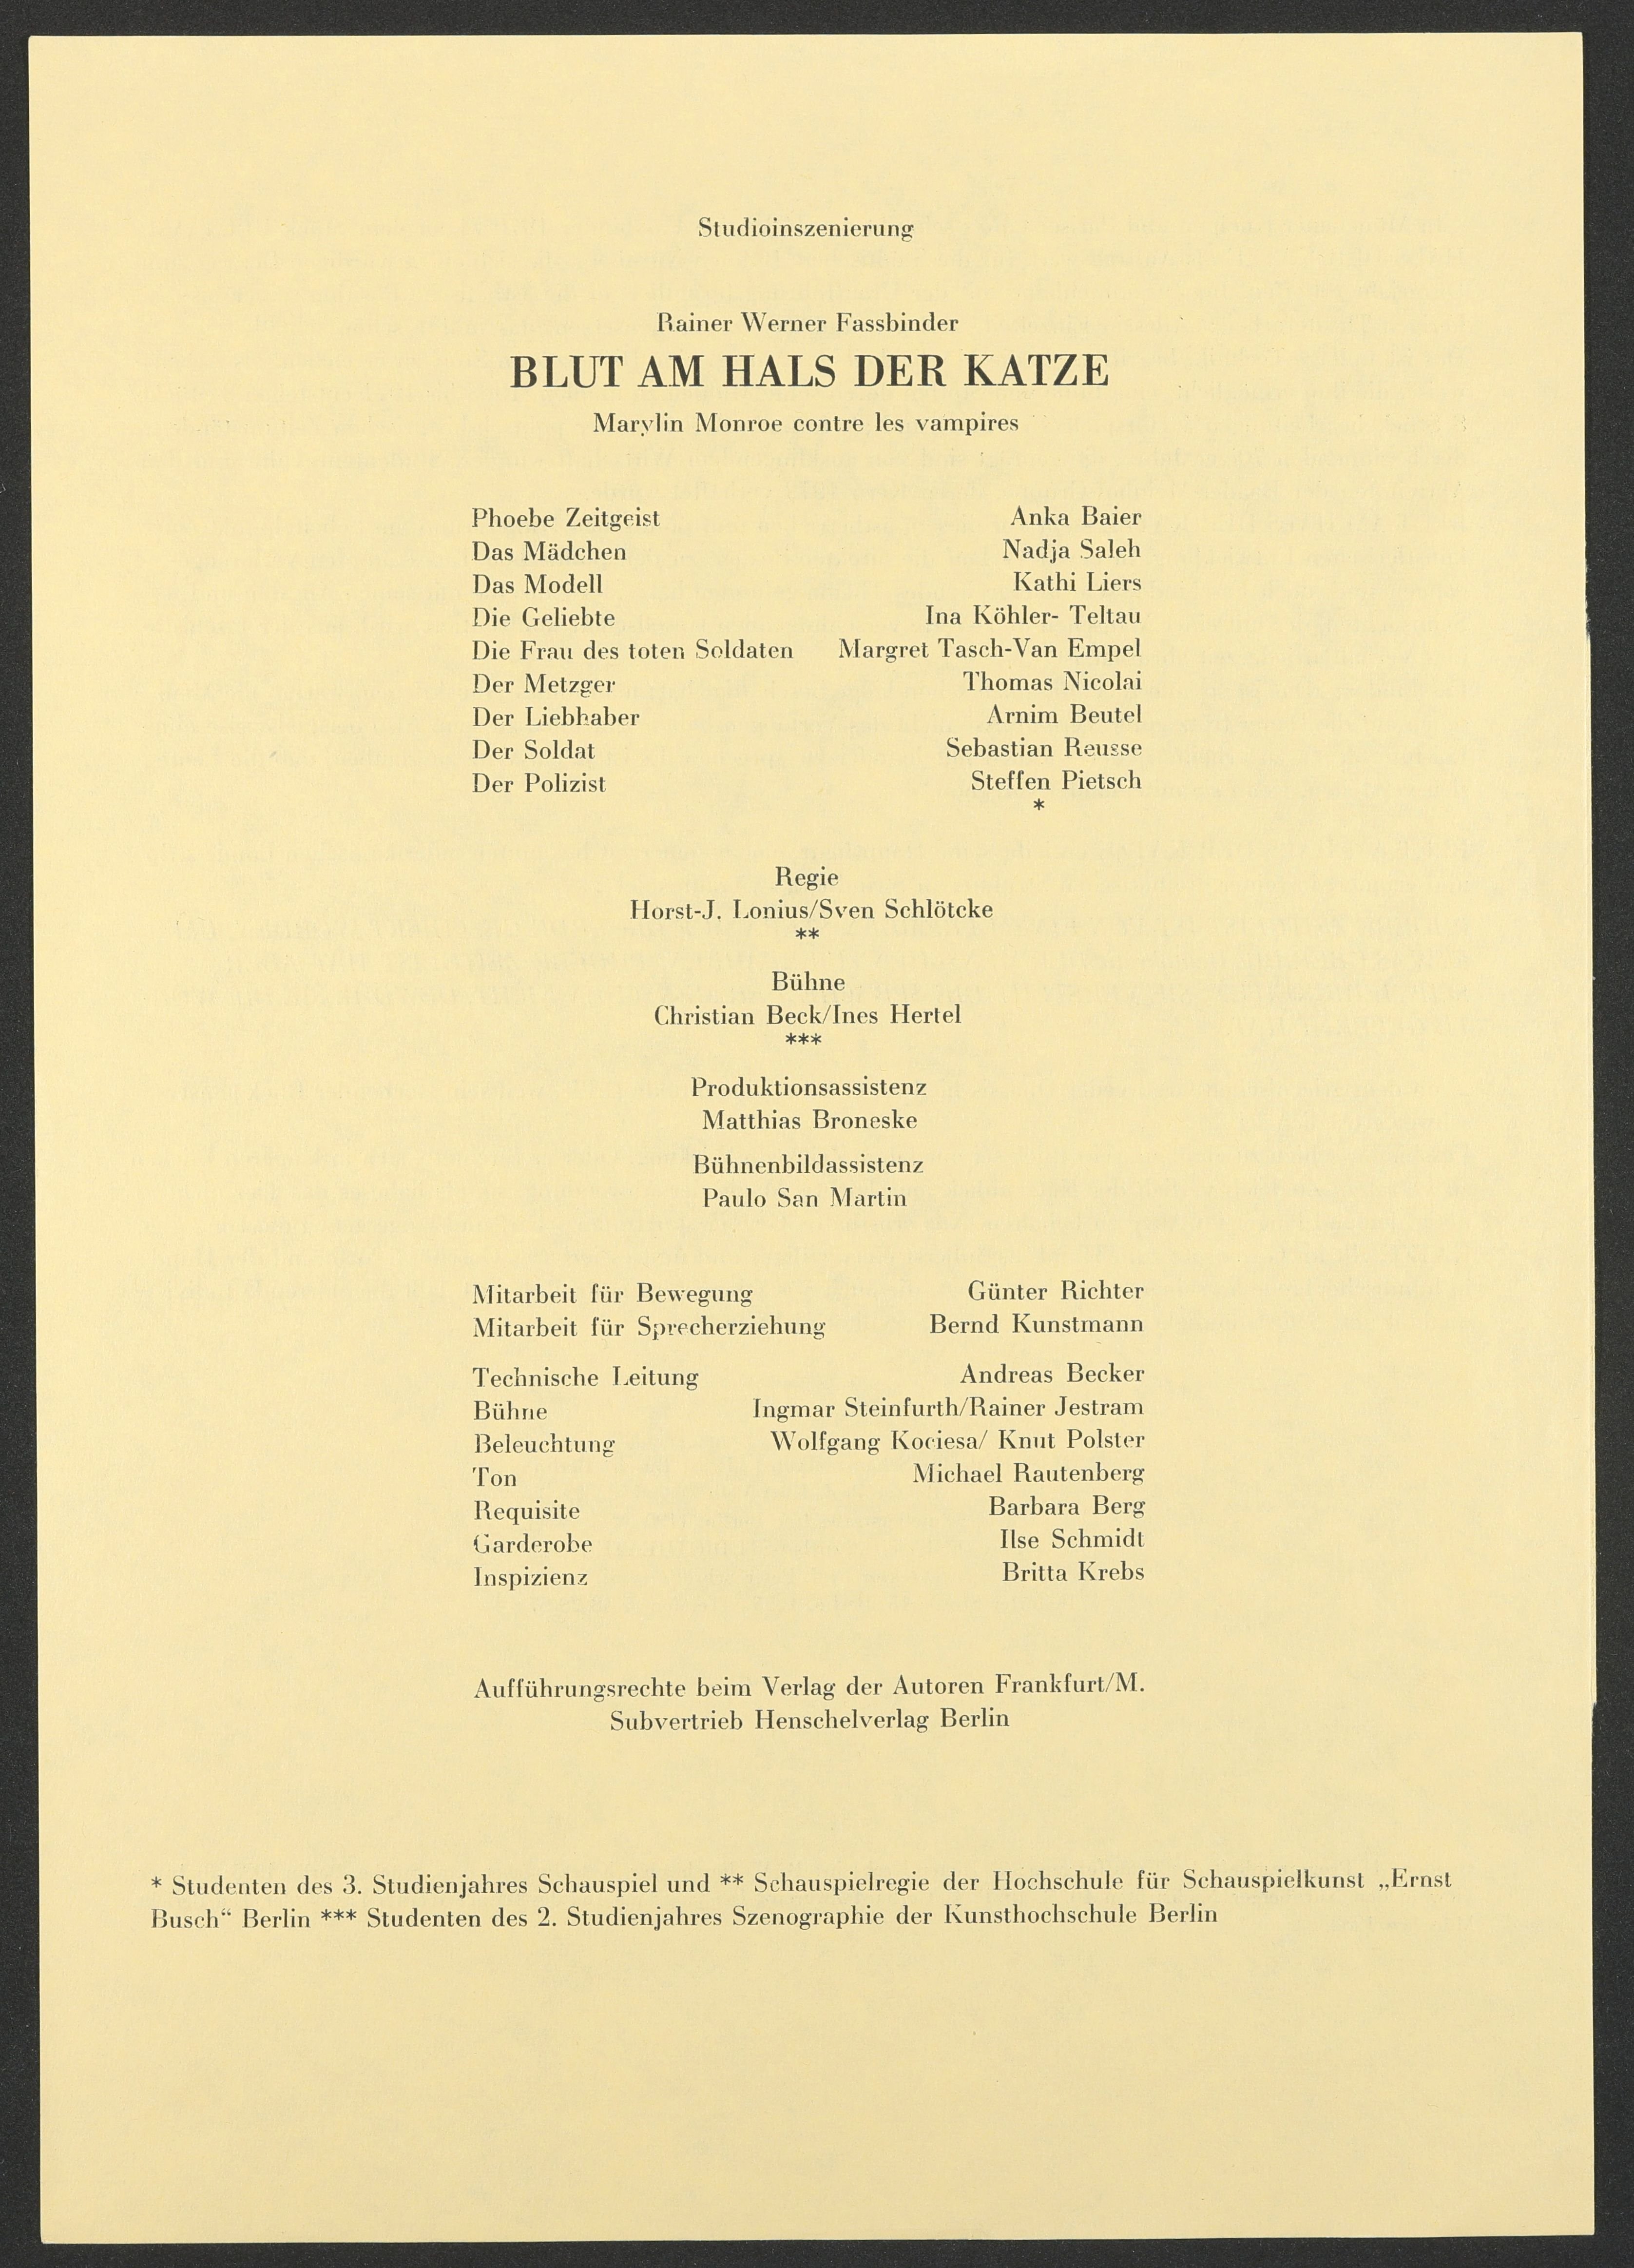 Programmzettel zu "Blut am Hals der Katze" am bat-Studiotheater 1990 (Hochschule für Schauspielkunst Ernst Busch Berlin RR-F)